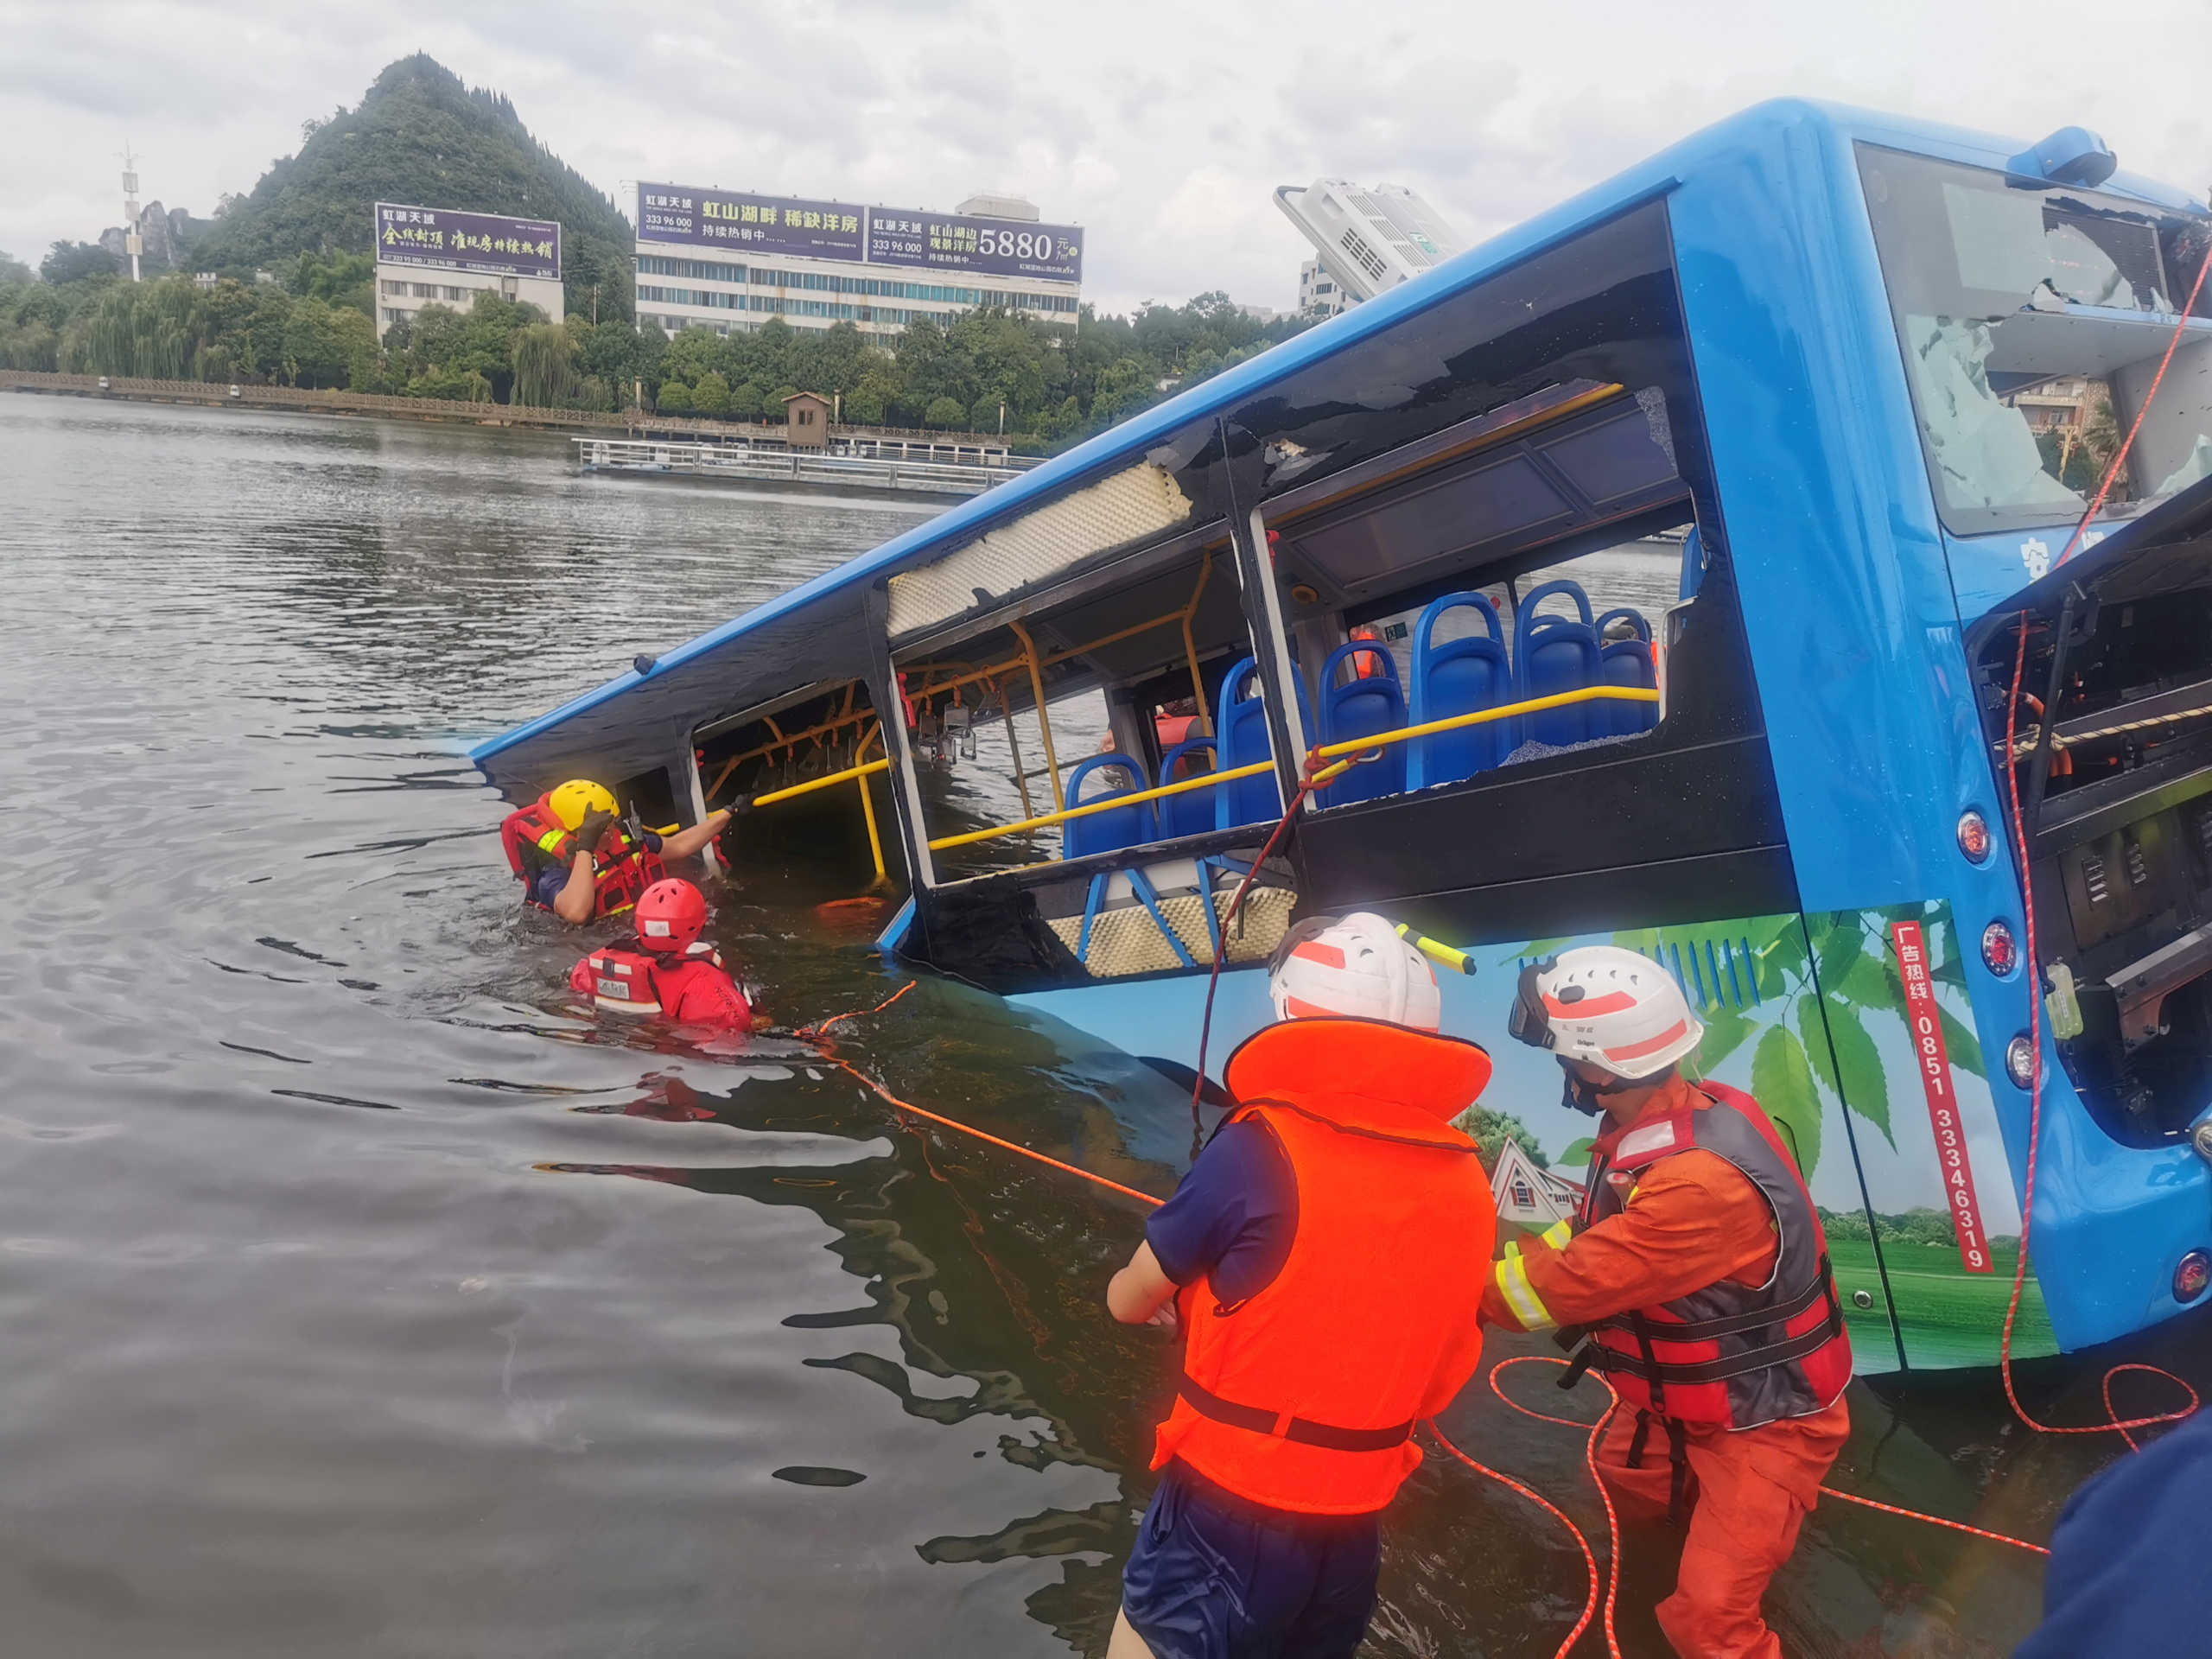 Κίνα: Έριξε επίτηδες το λεωφορείο στη λίμνη σκοτώνοντας 21 ανθρώπους γιατί του κατεδάφισαν το σπίτι